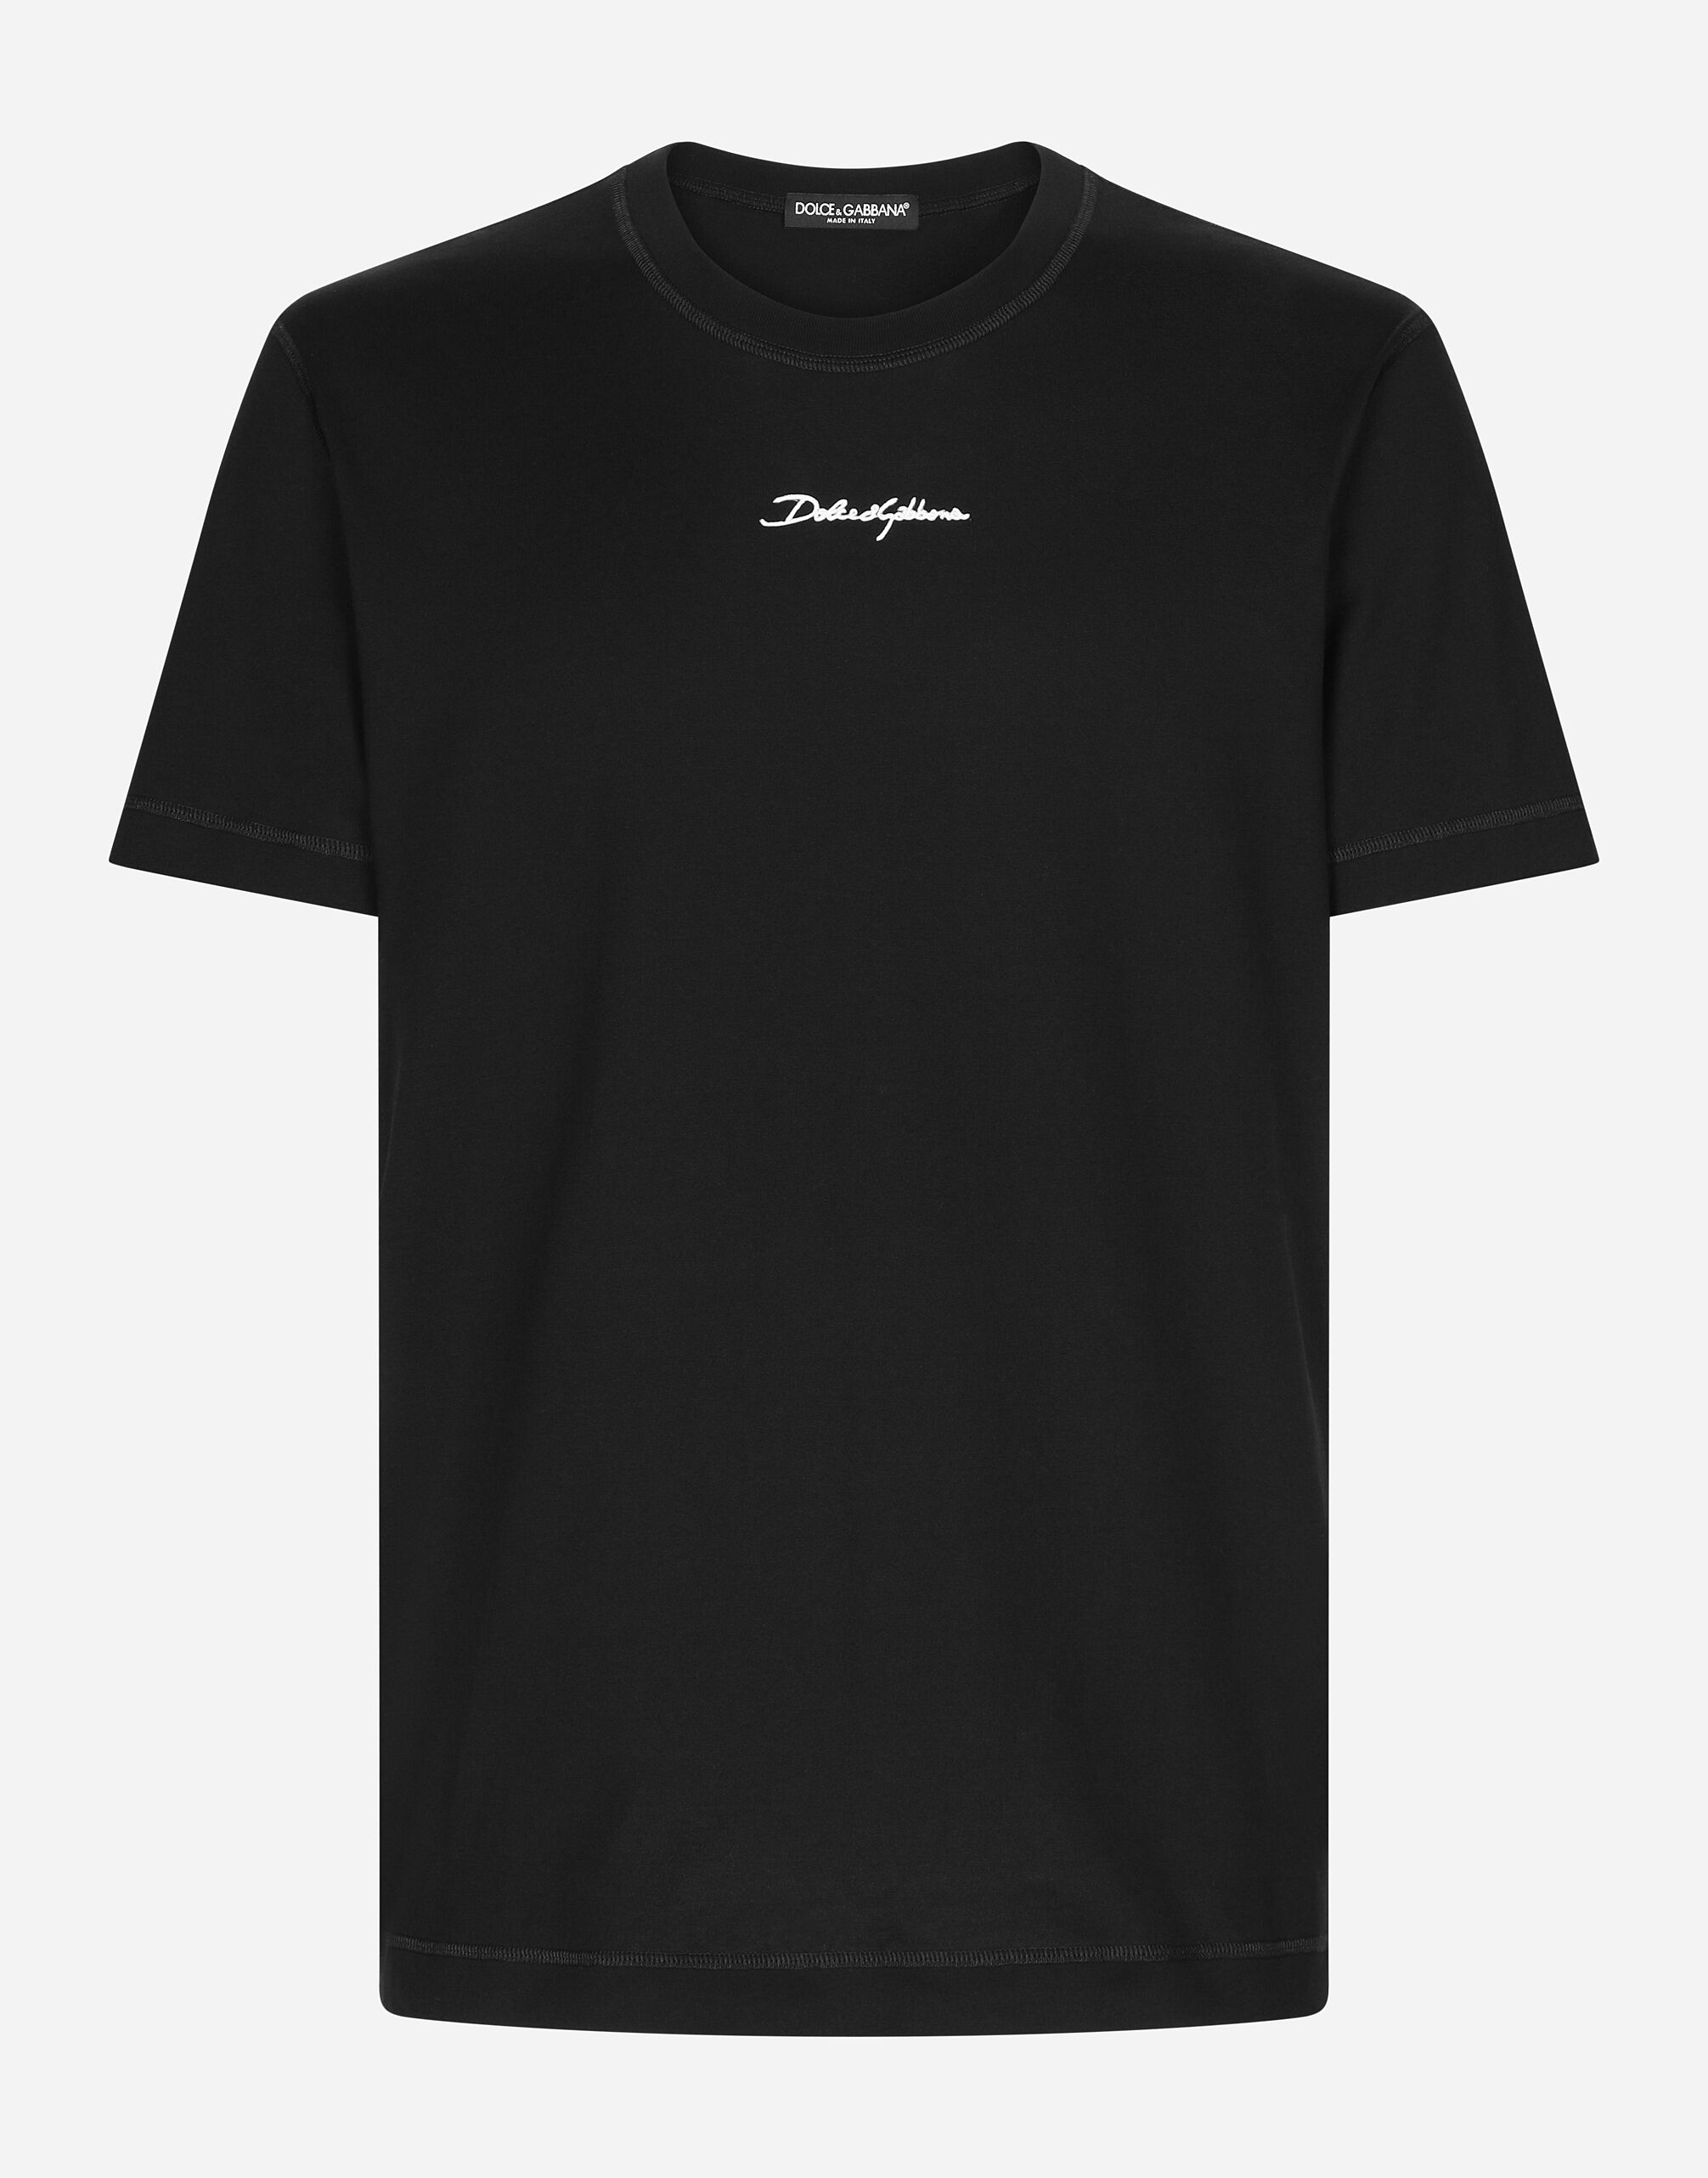 Dolce & Gabbana T-Shirt aus Baumwolle mit Logo Mehrfarbig G8PN9TG7NPZ